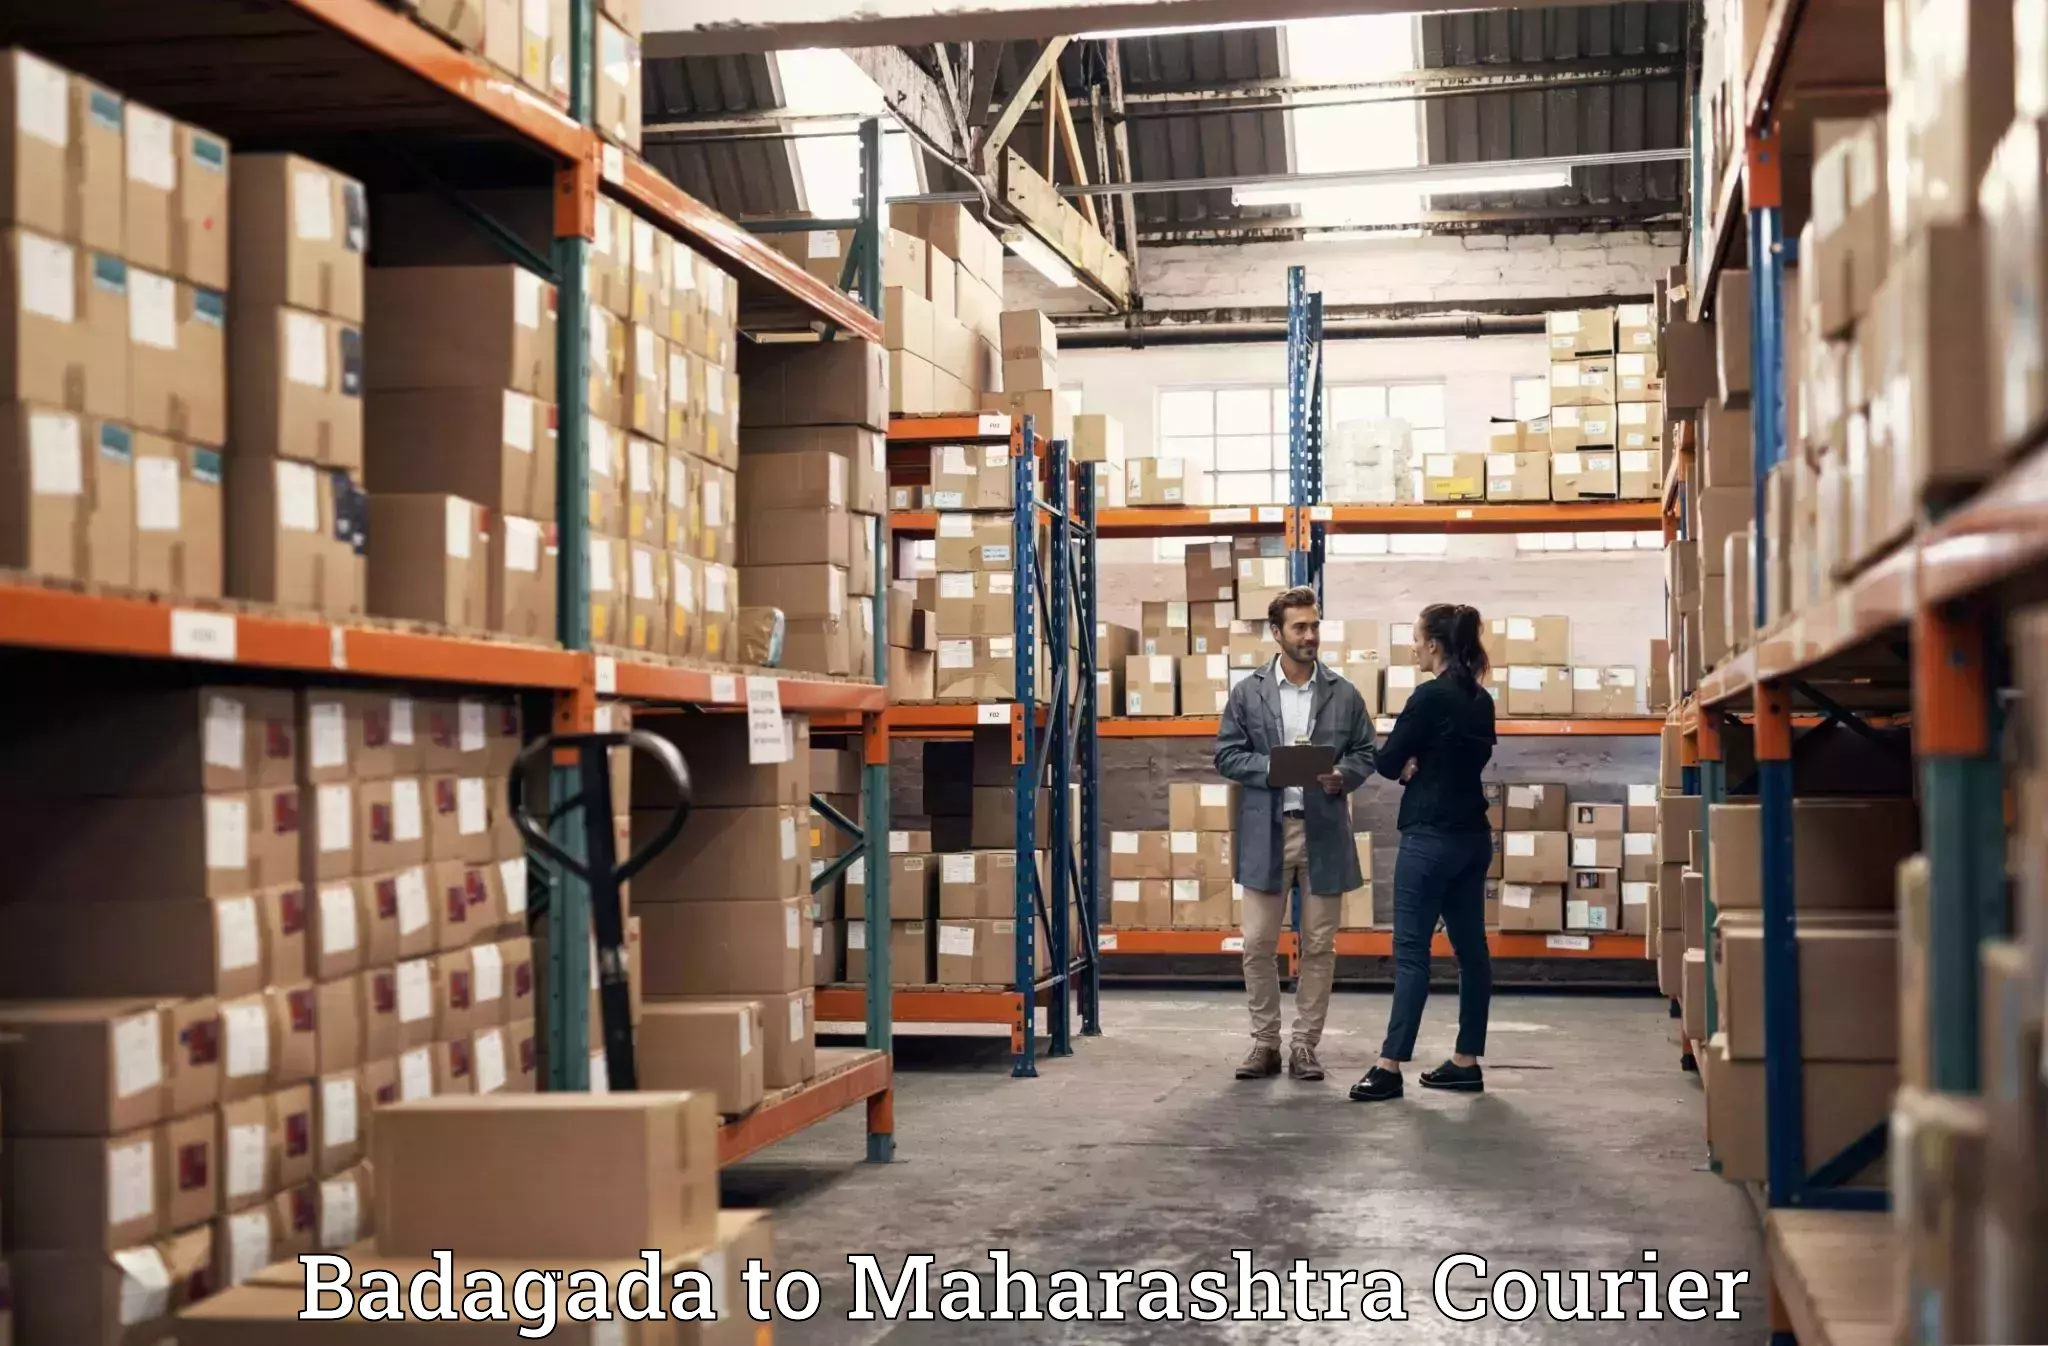 Home relocation experts Badagada to Maharashtra